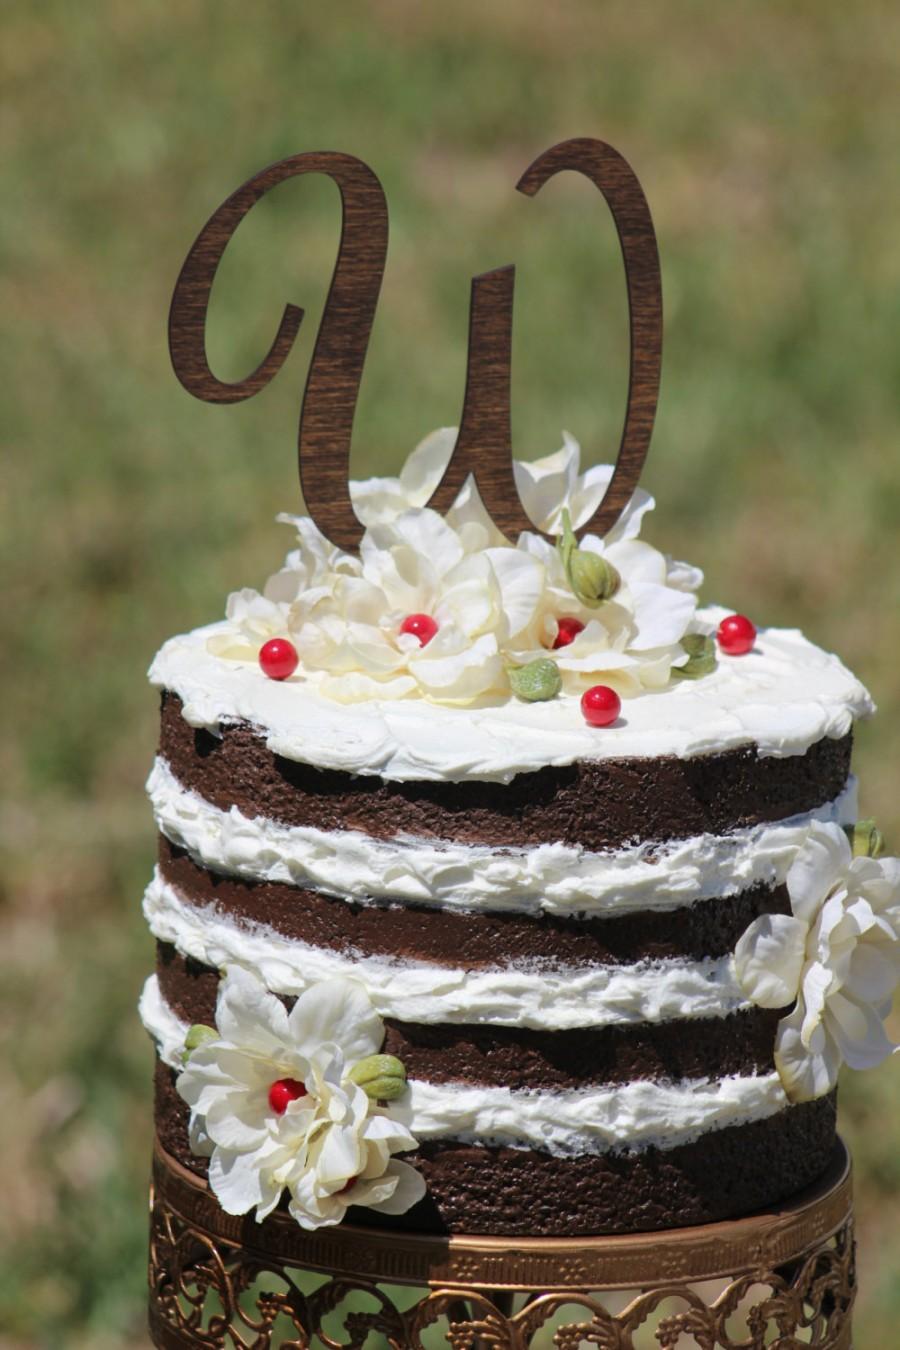 Mariage - Monogram Wedding Cake topper - Wooden cake topper - Personalized Cake topper